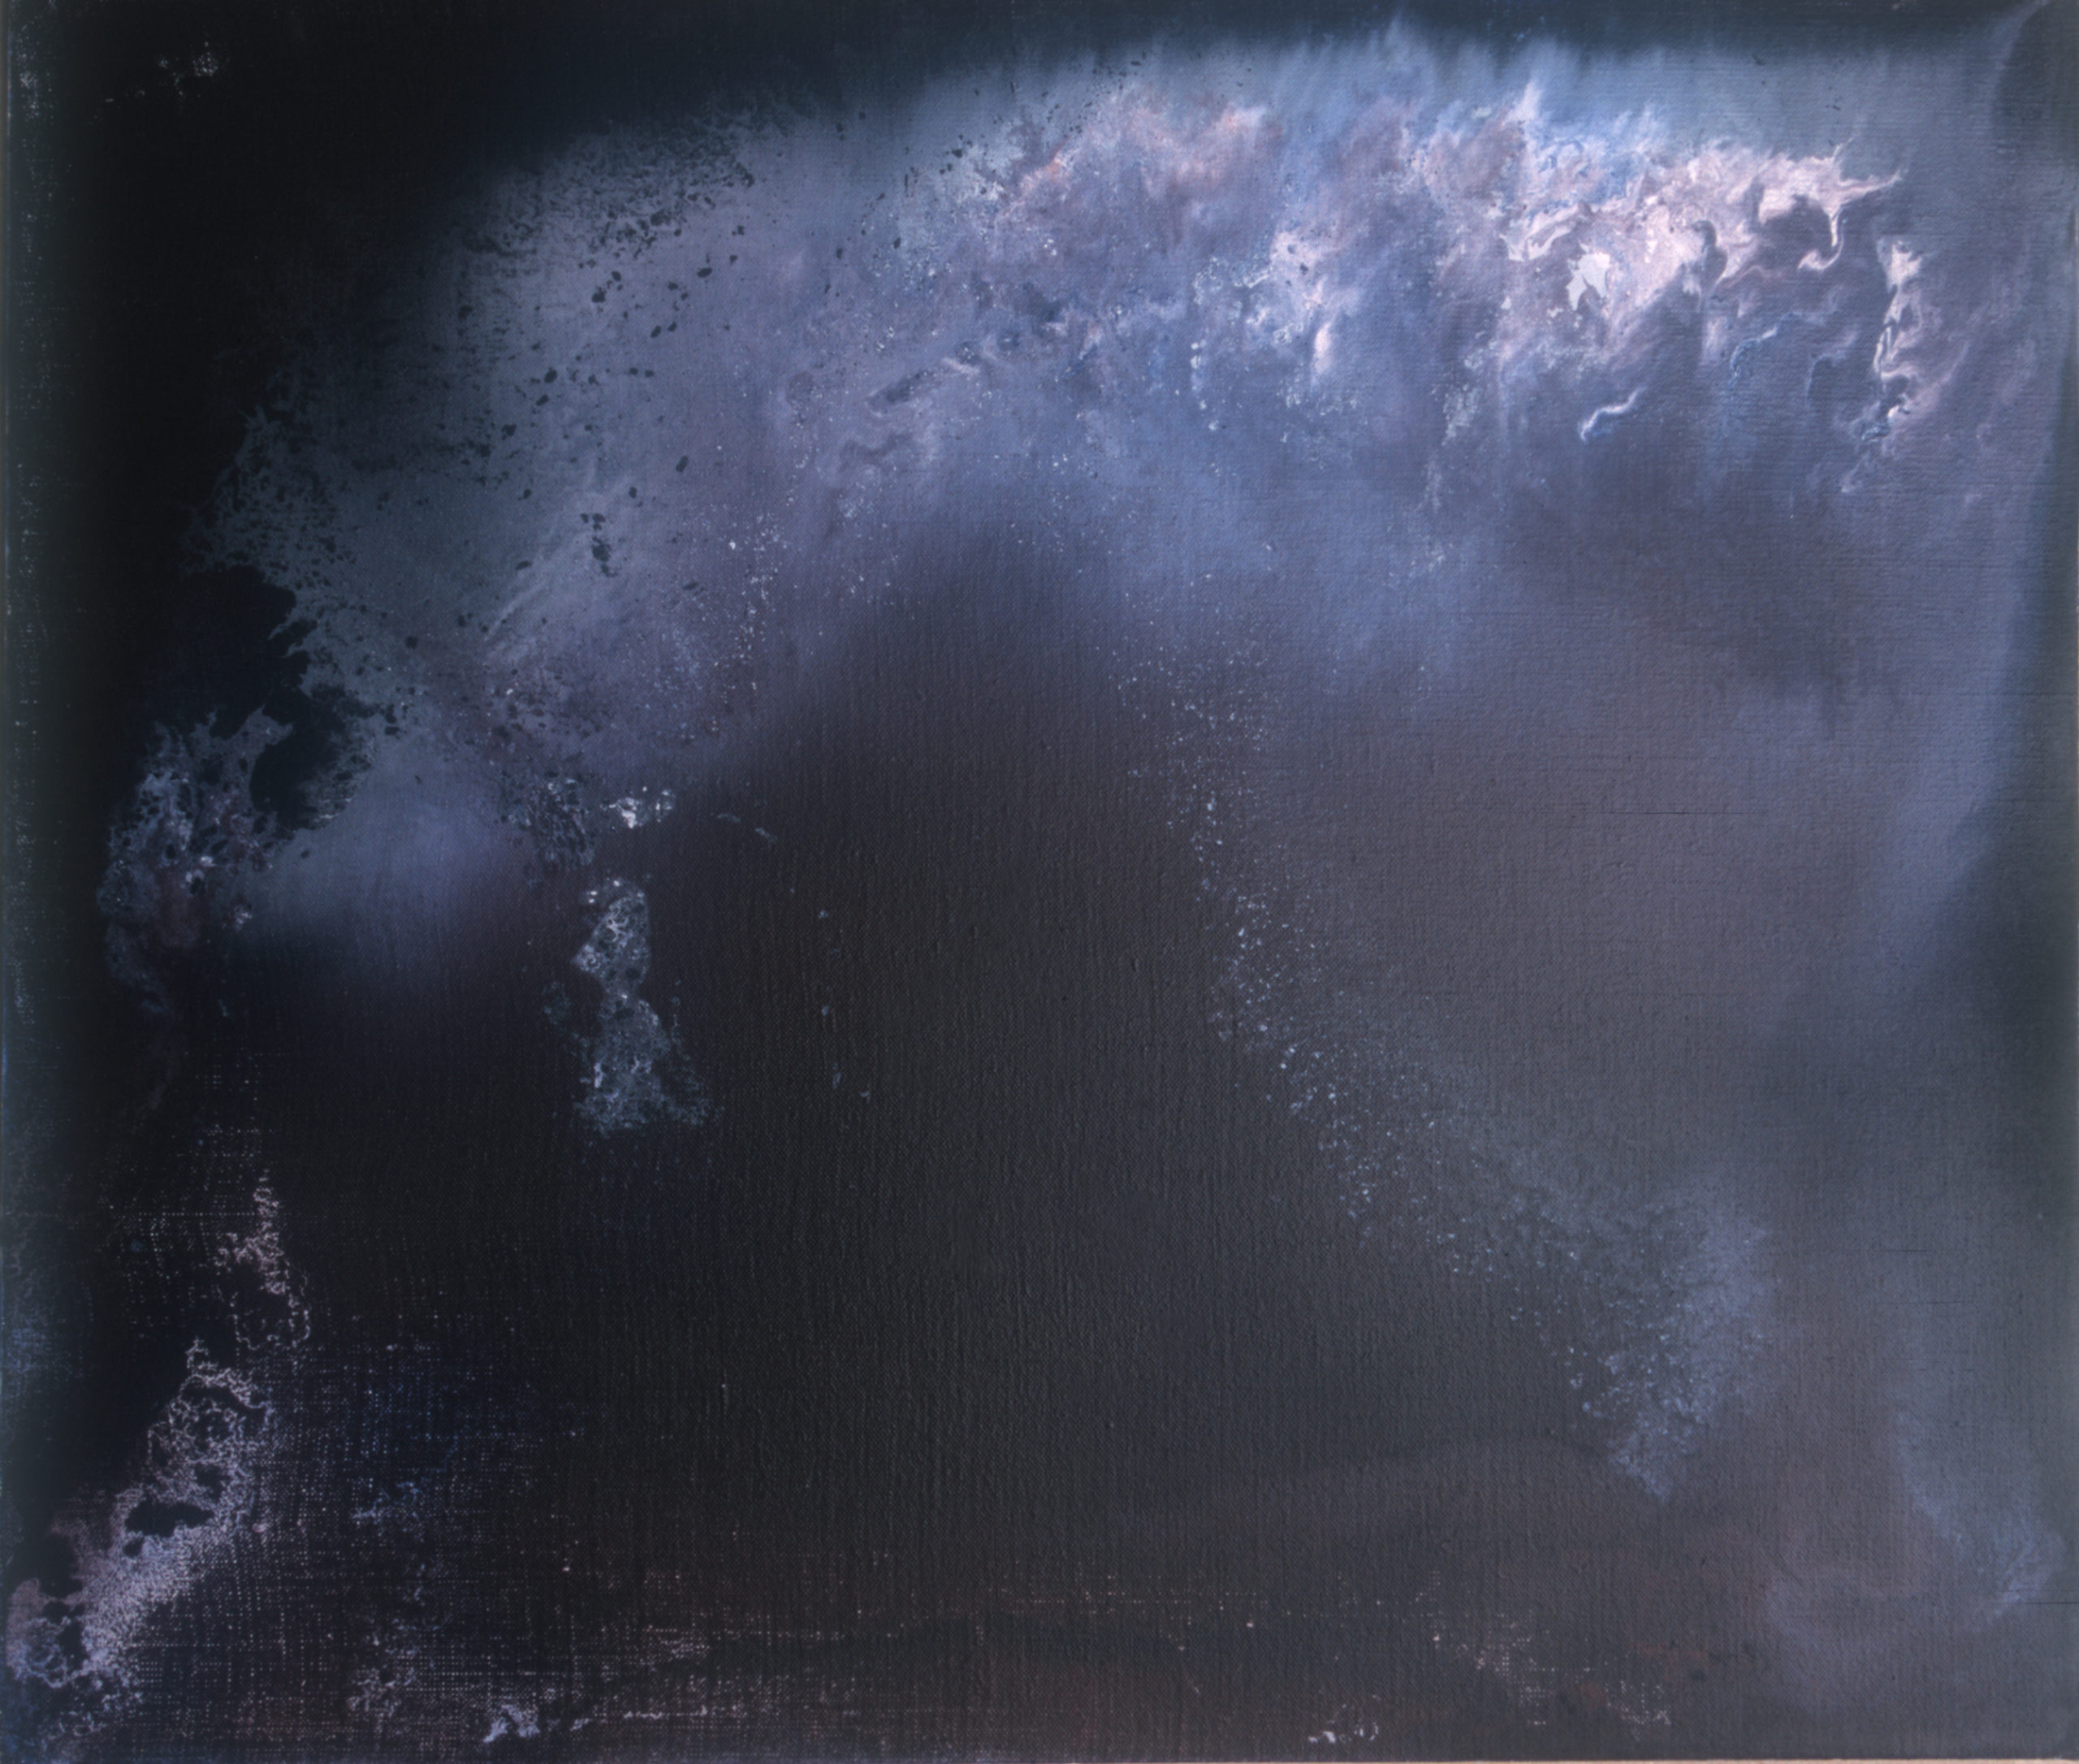 Dalla serie L’immagine accolta, 2006, olio su tela, 59 x 69 cm